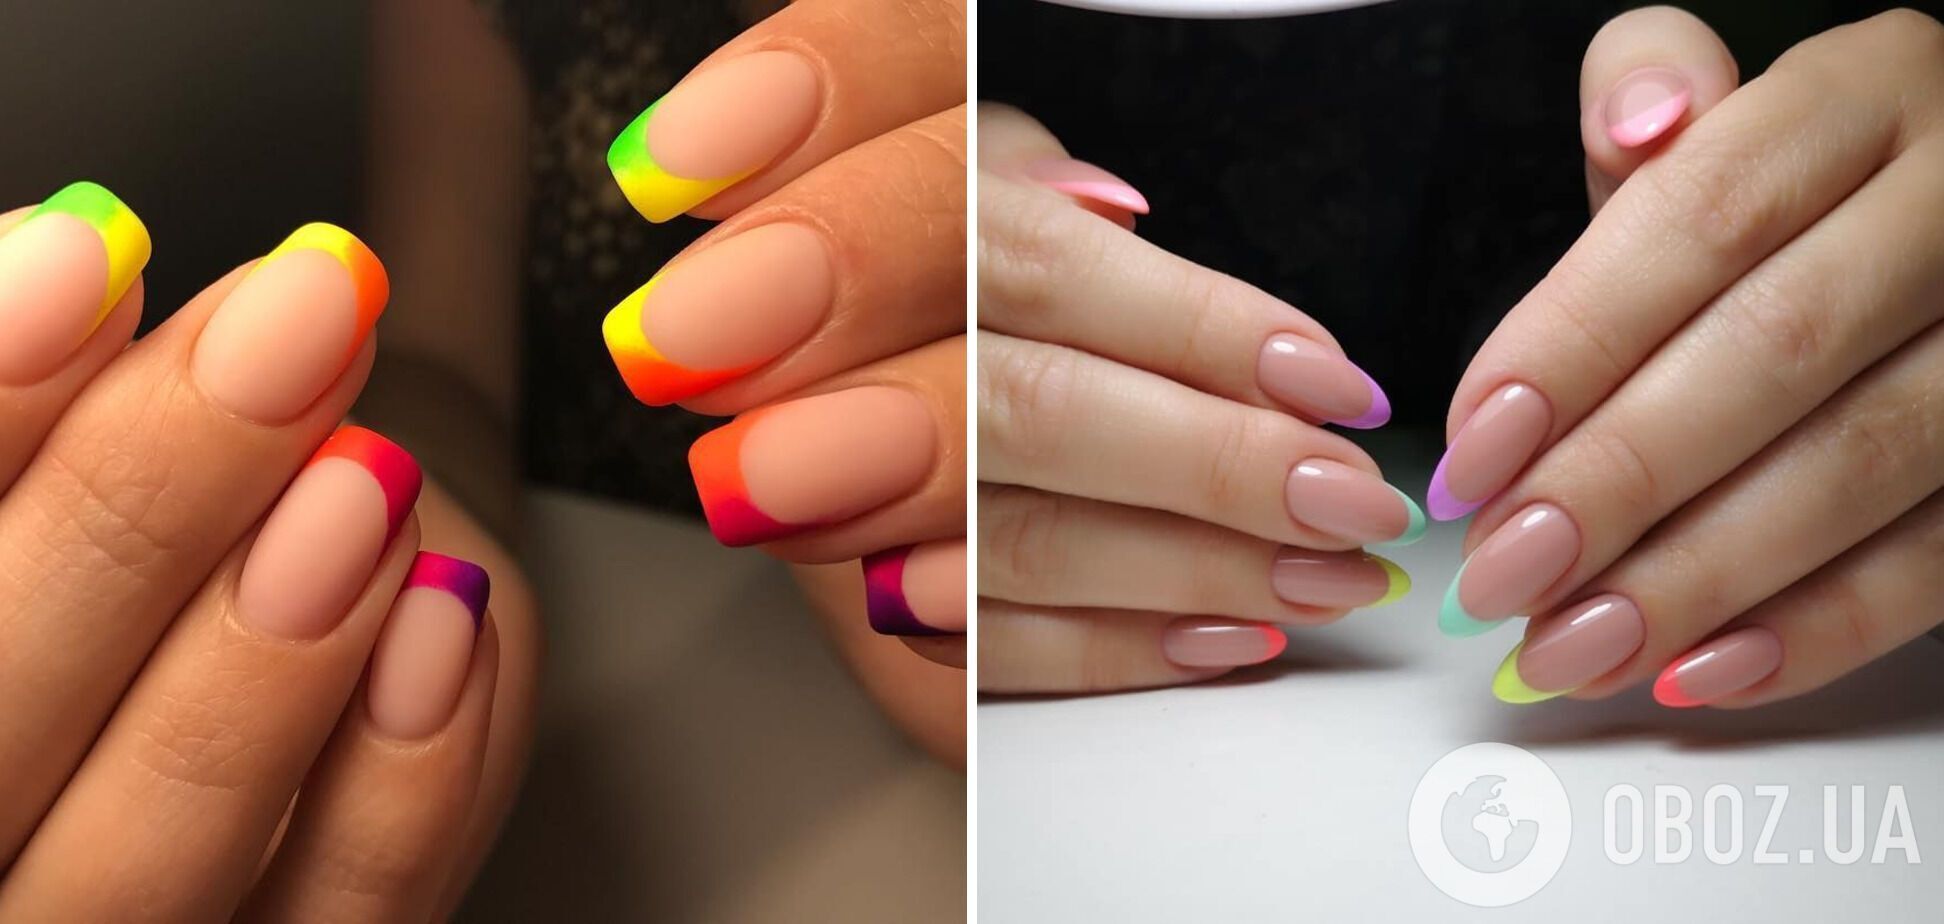 Каждый кончик пальца можно покрасить разными цветами